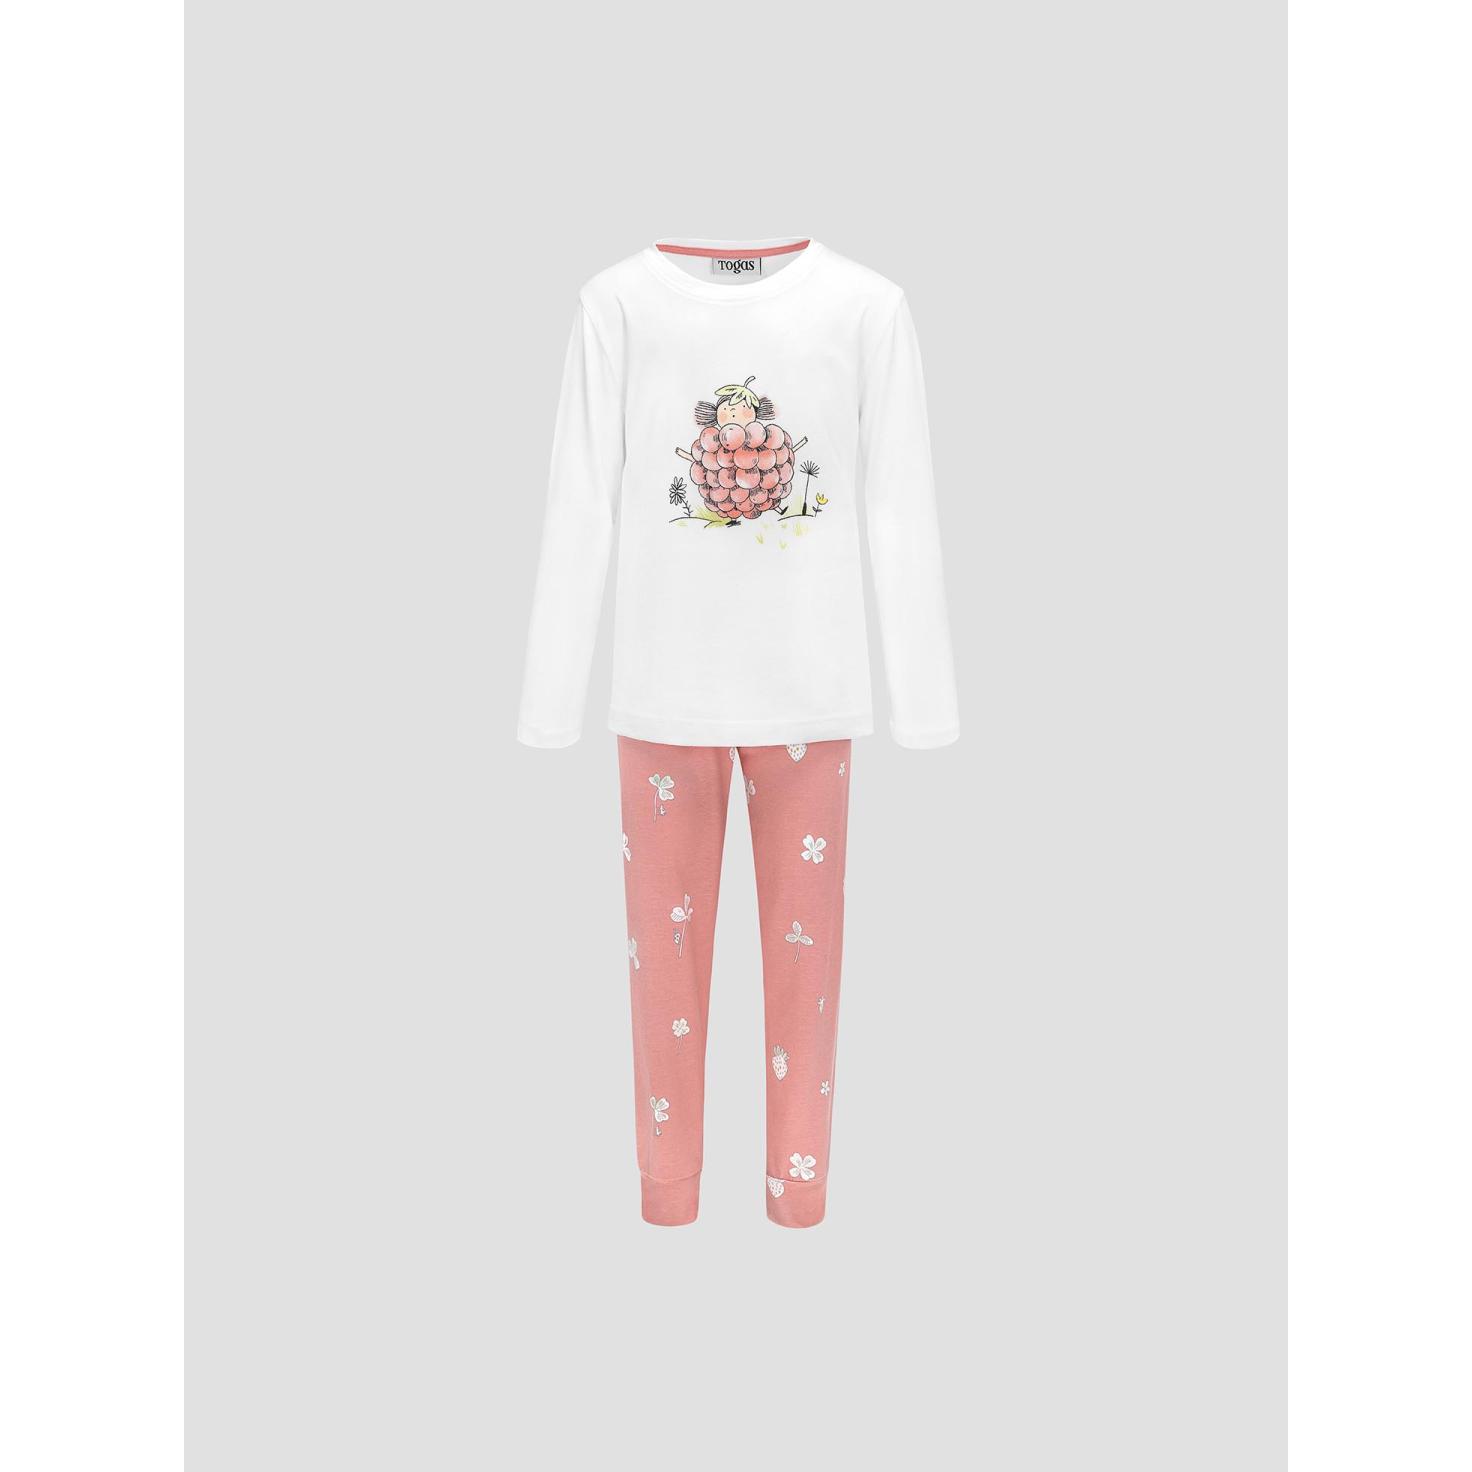 Пижама для девочек Kids by togas Стробби бело-розовый 92-98 см жен пижама с шортами пастила розовый р 54